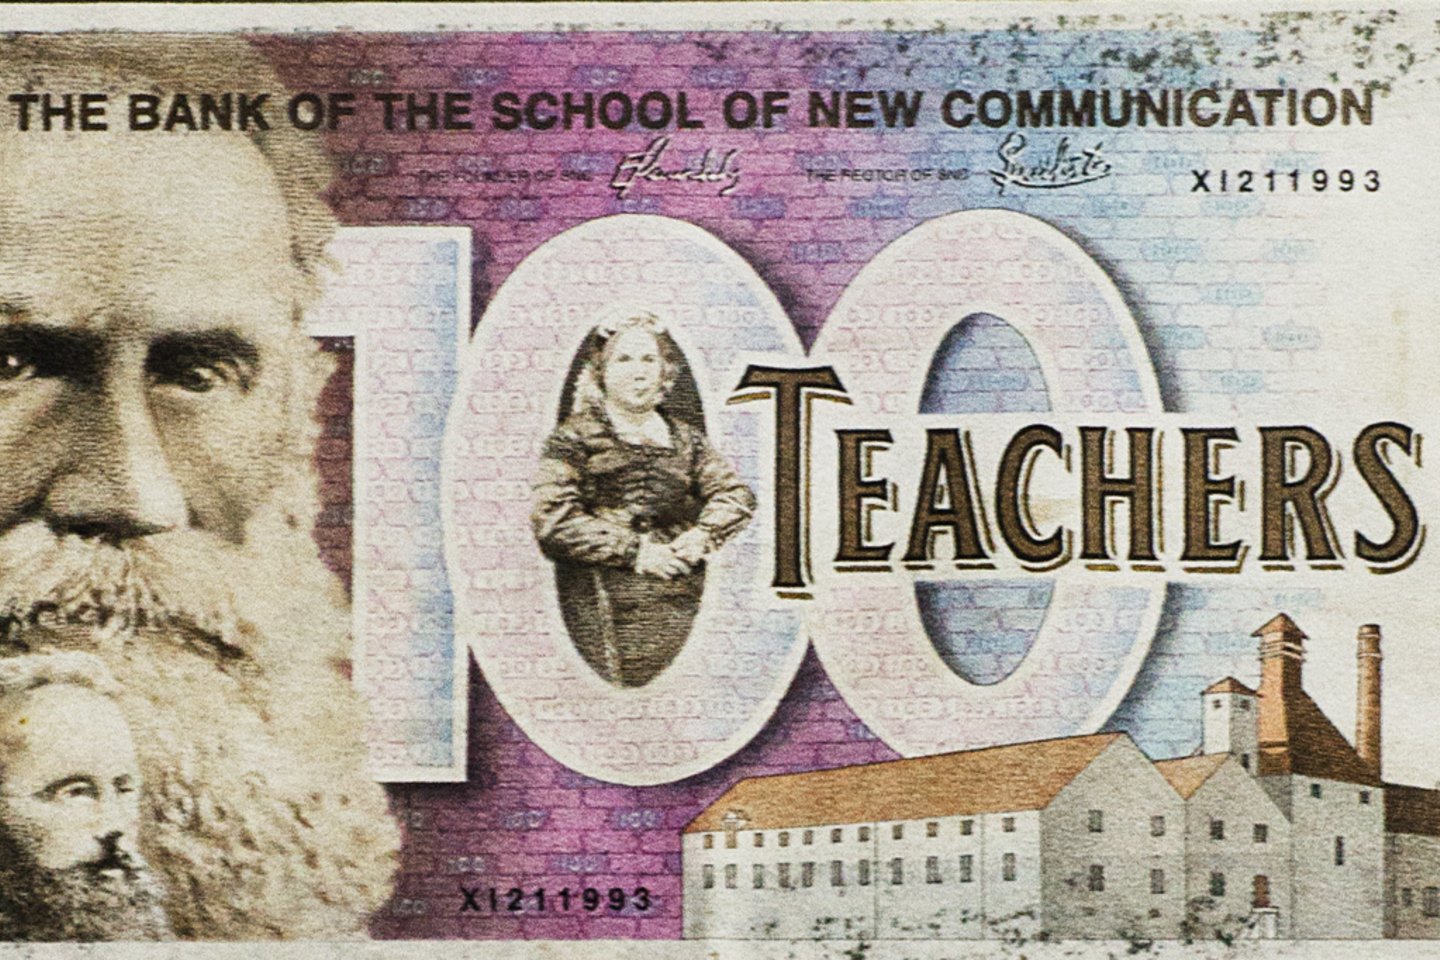 Rubrikoje „In focus“ pristatyta dadaistiška Naujoji komunikacijos mokykla. Hundred Teachers banknotas (1991 m.).